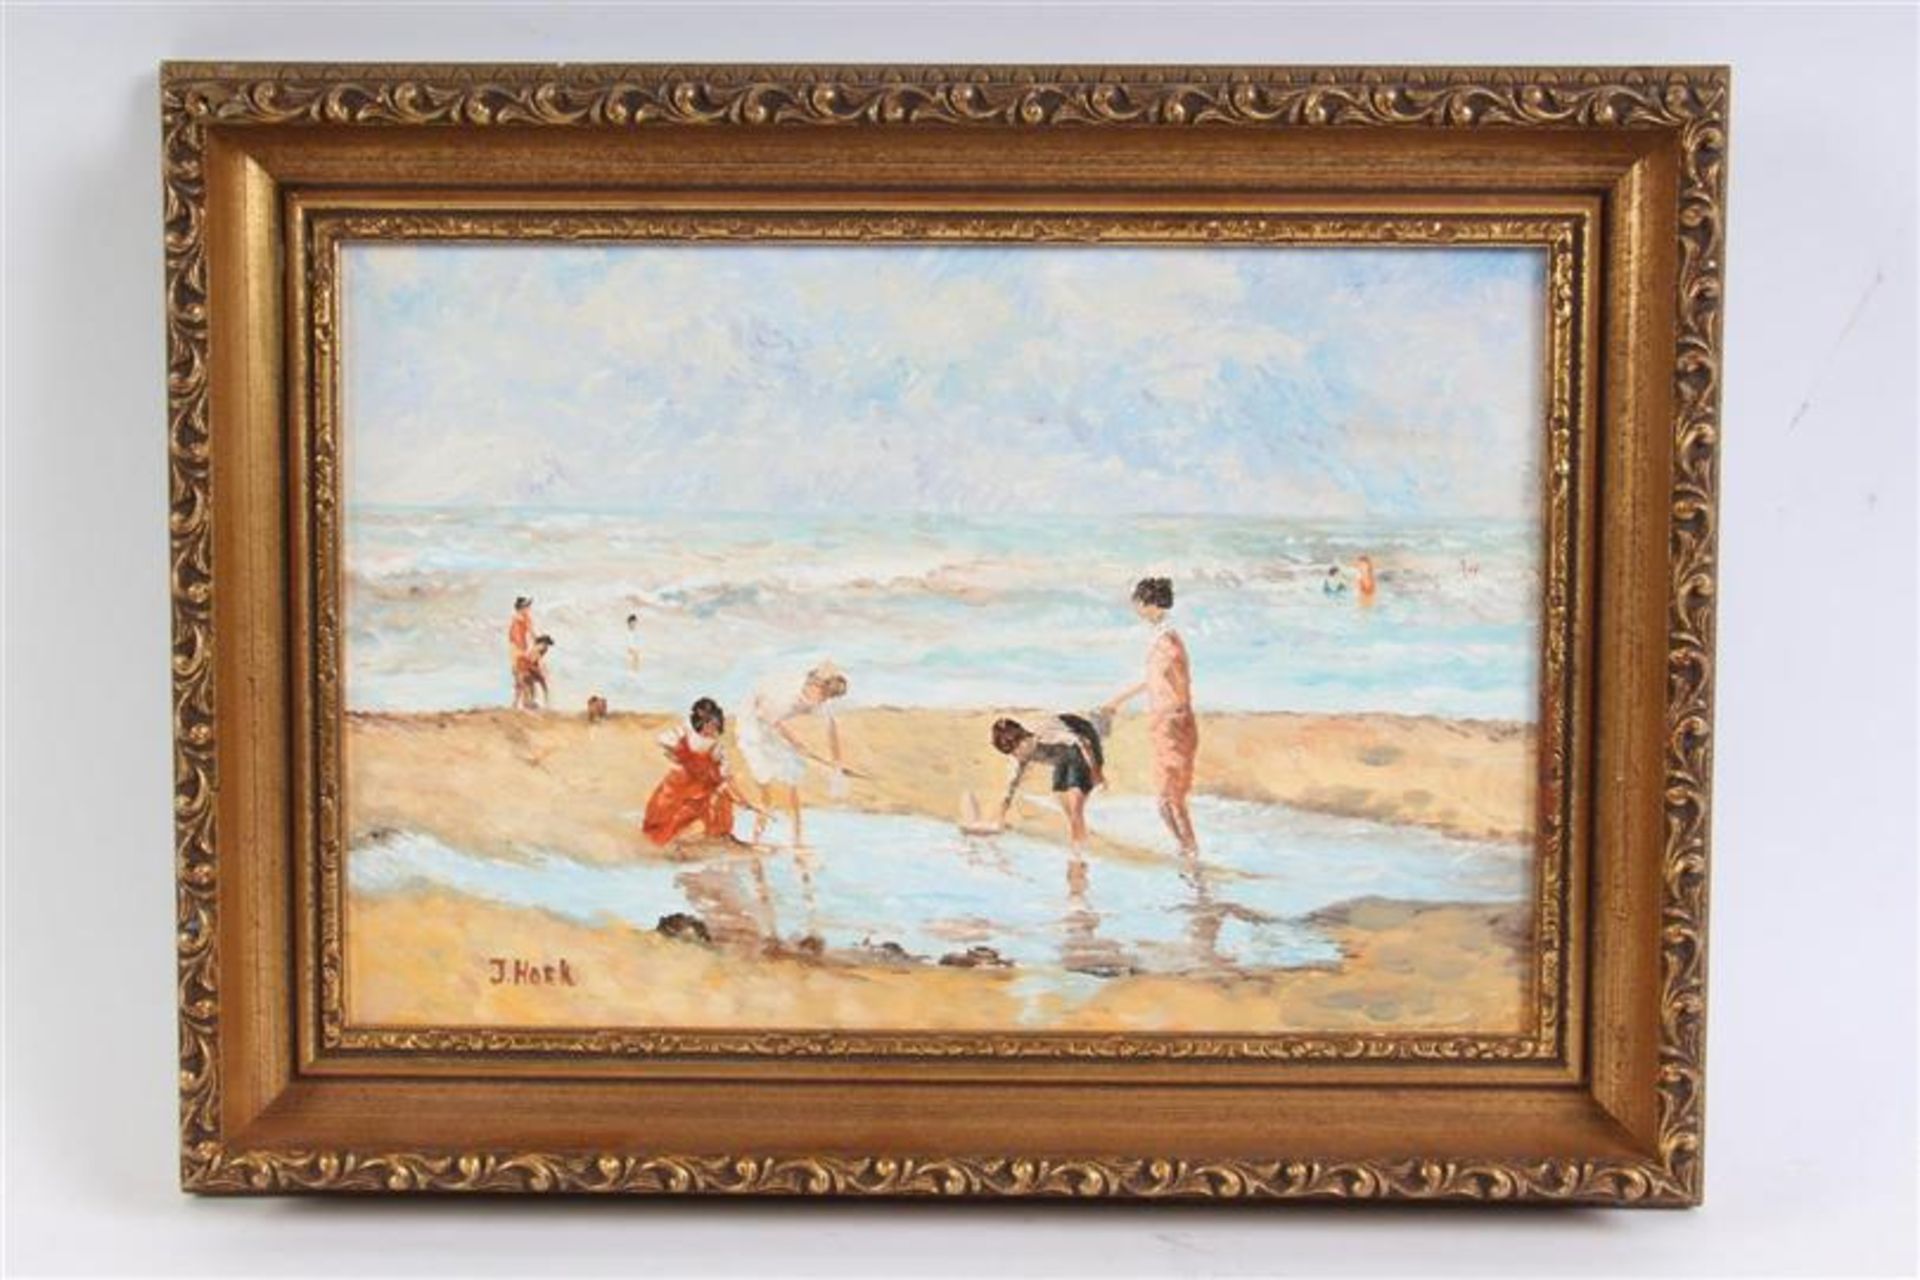 Schilderij op paneel, 'Strandgezicht', gesigneerd J. Hoek. HxB: 19 x 28 cm.